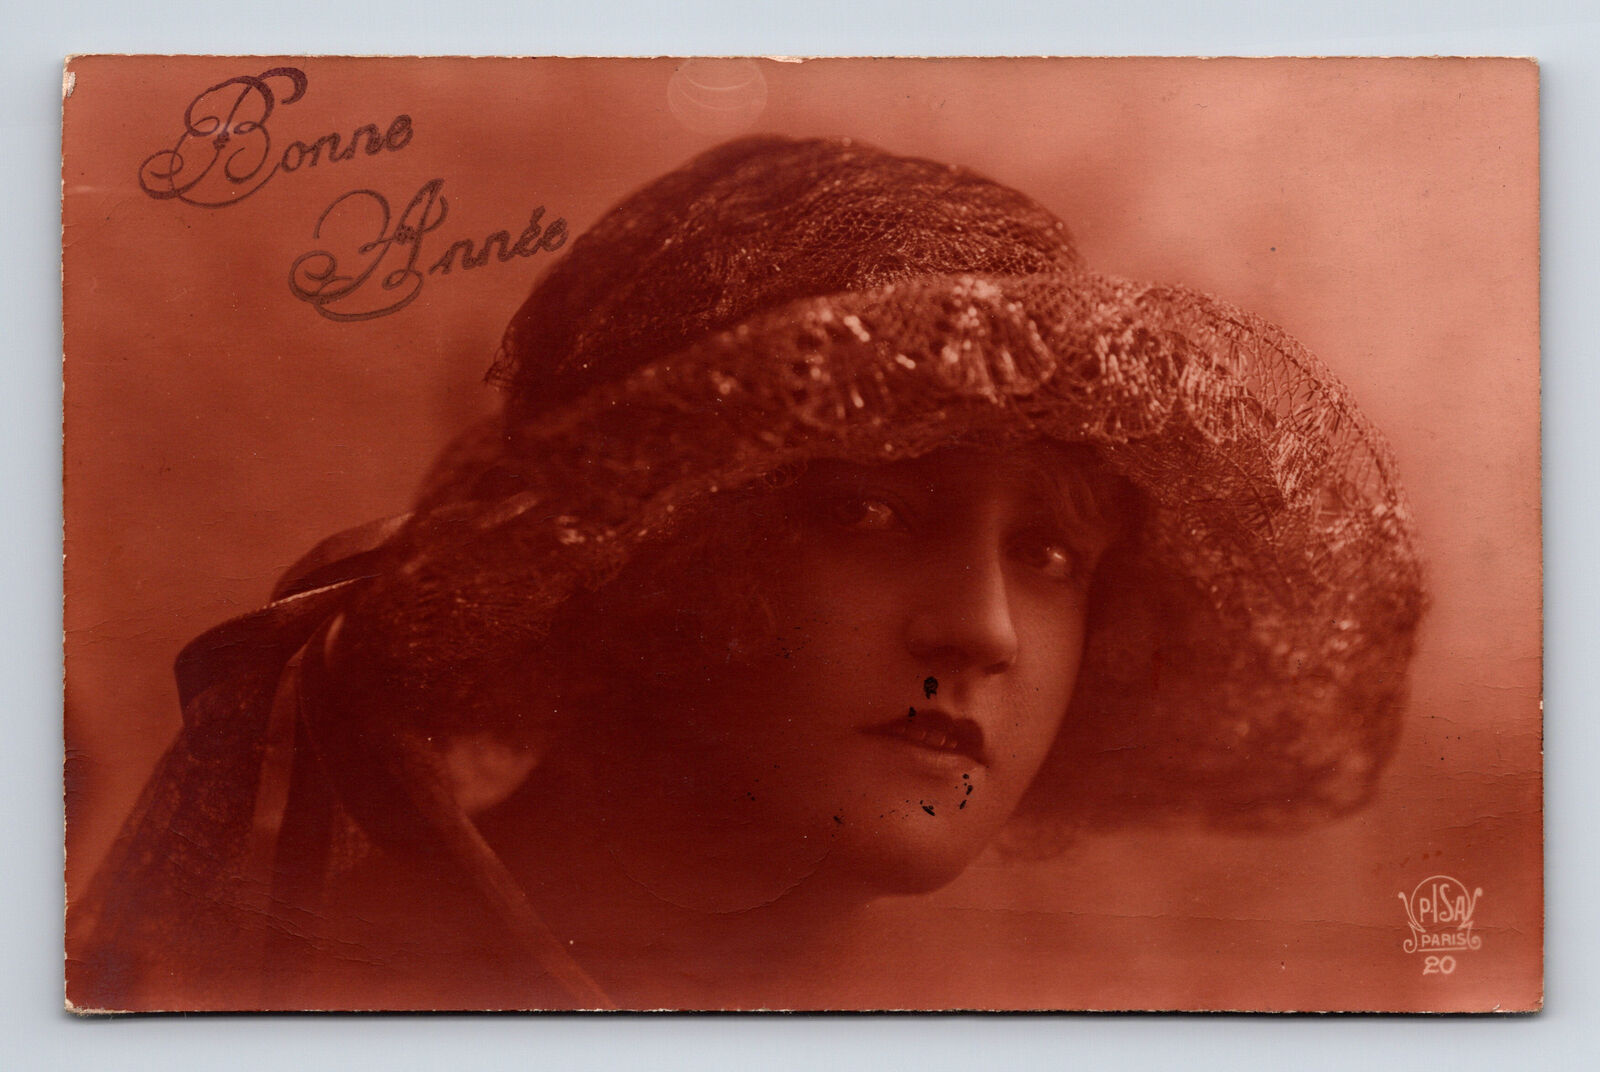 c1923 RPPC French Bonne Annee Portrait of Woman Lace Brimmed Hat Postcard